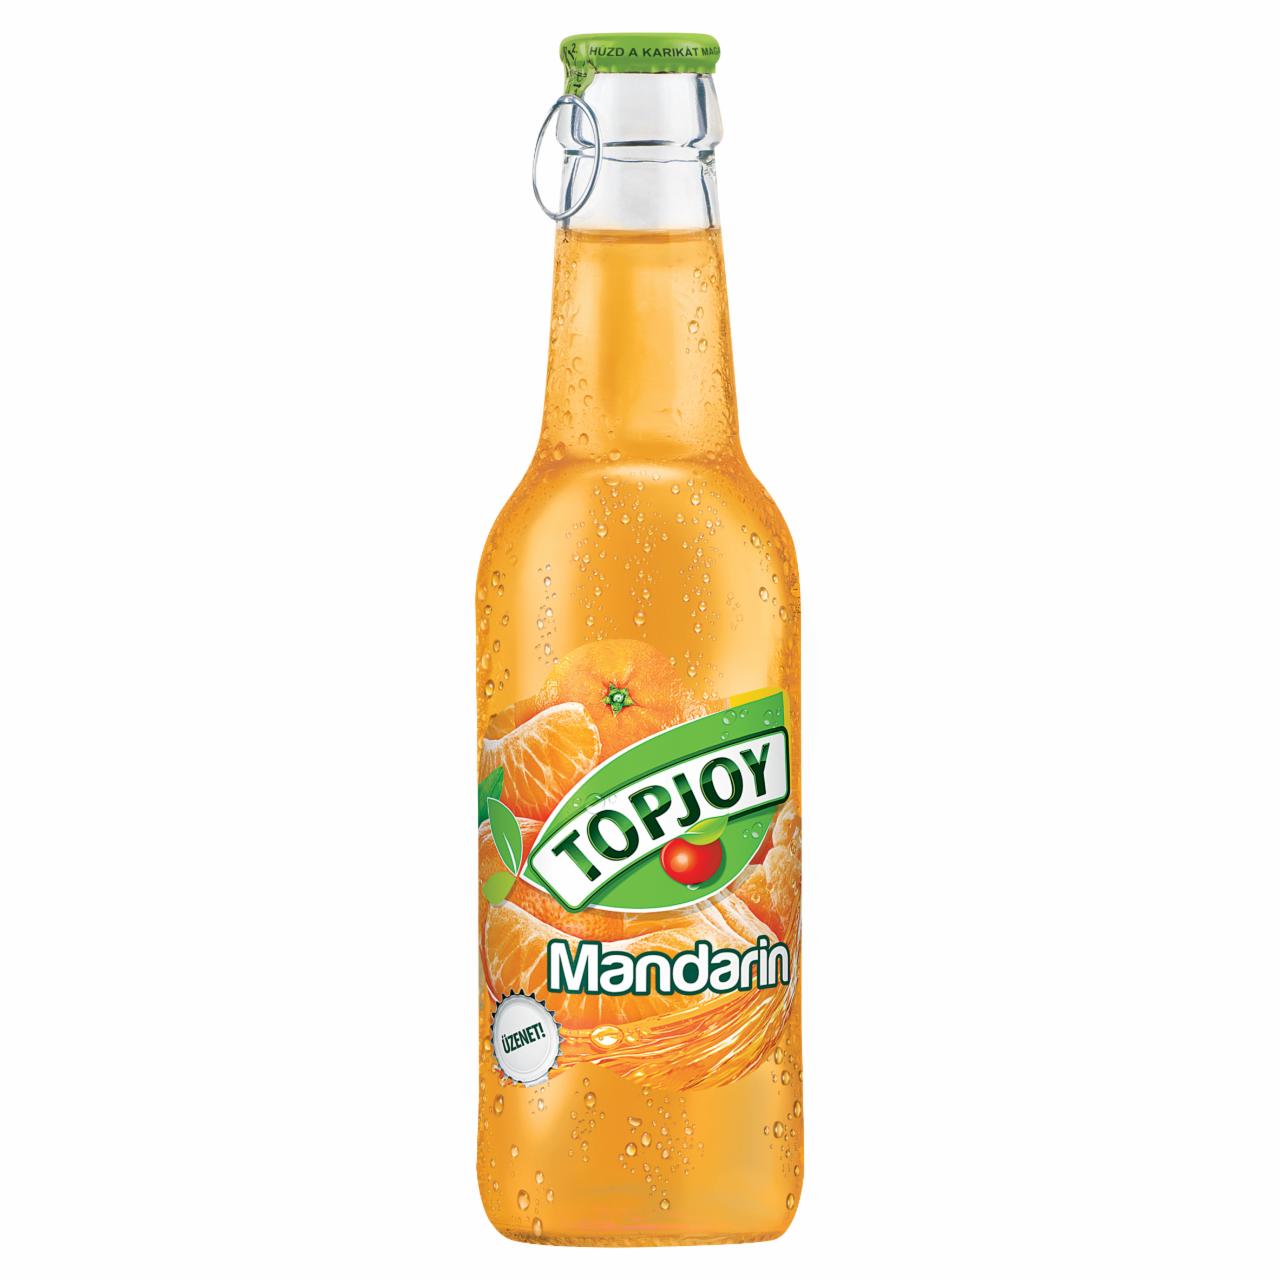 Képek - Topjoy mandarin ital 250 ml